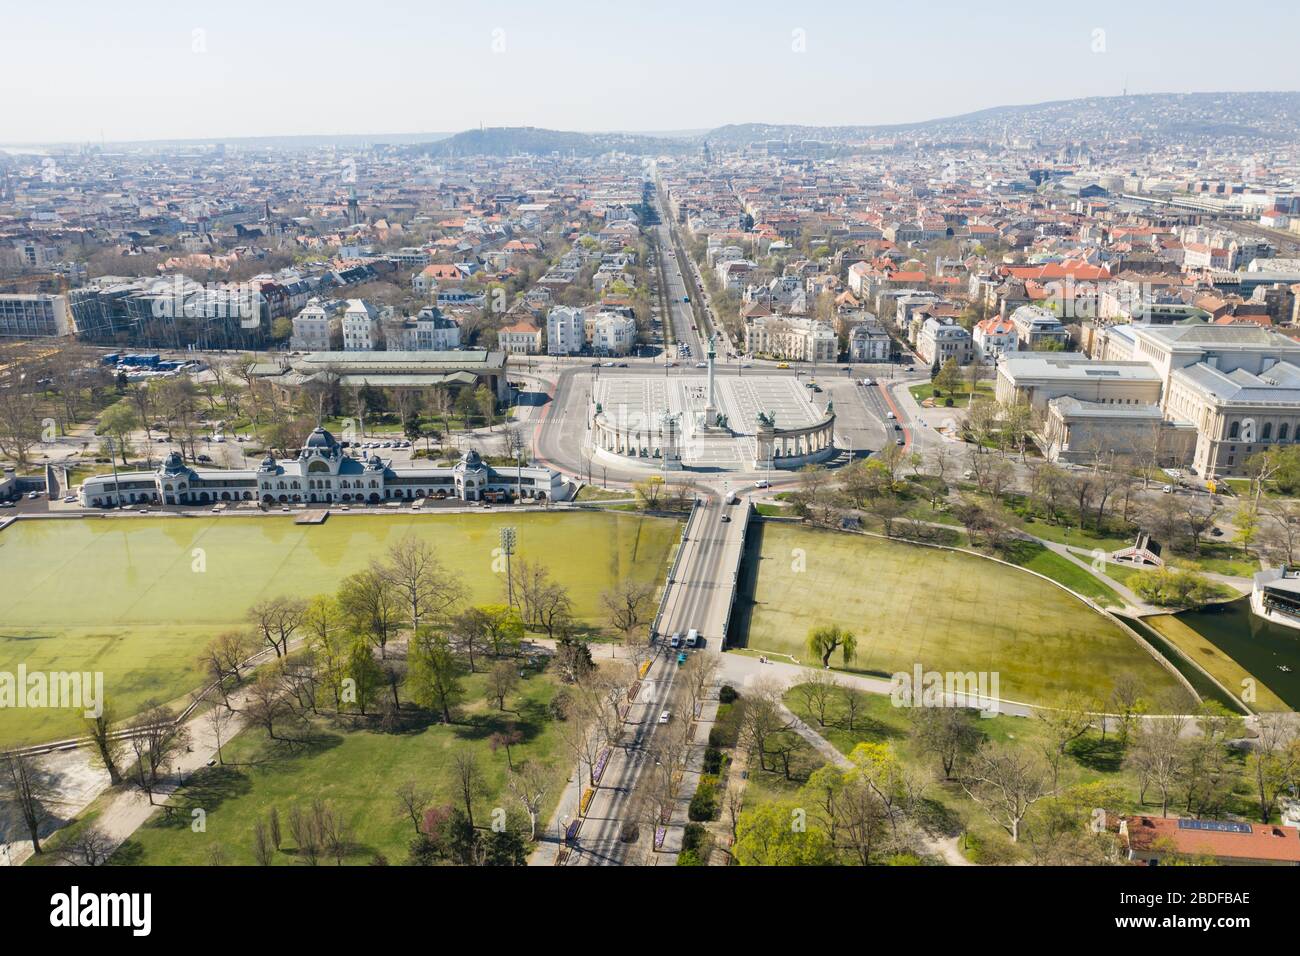 Destinazione turistica vuota a Budapest, Ungheria. Il City Park è normalmente pieno, ora deserte. Piazza degli eroi. Il turismo si è fermato nell'UE Foto Stock